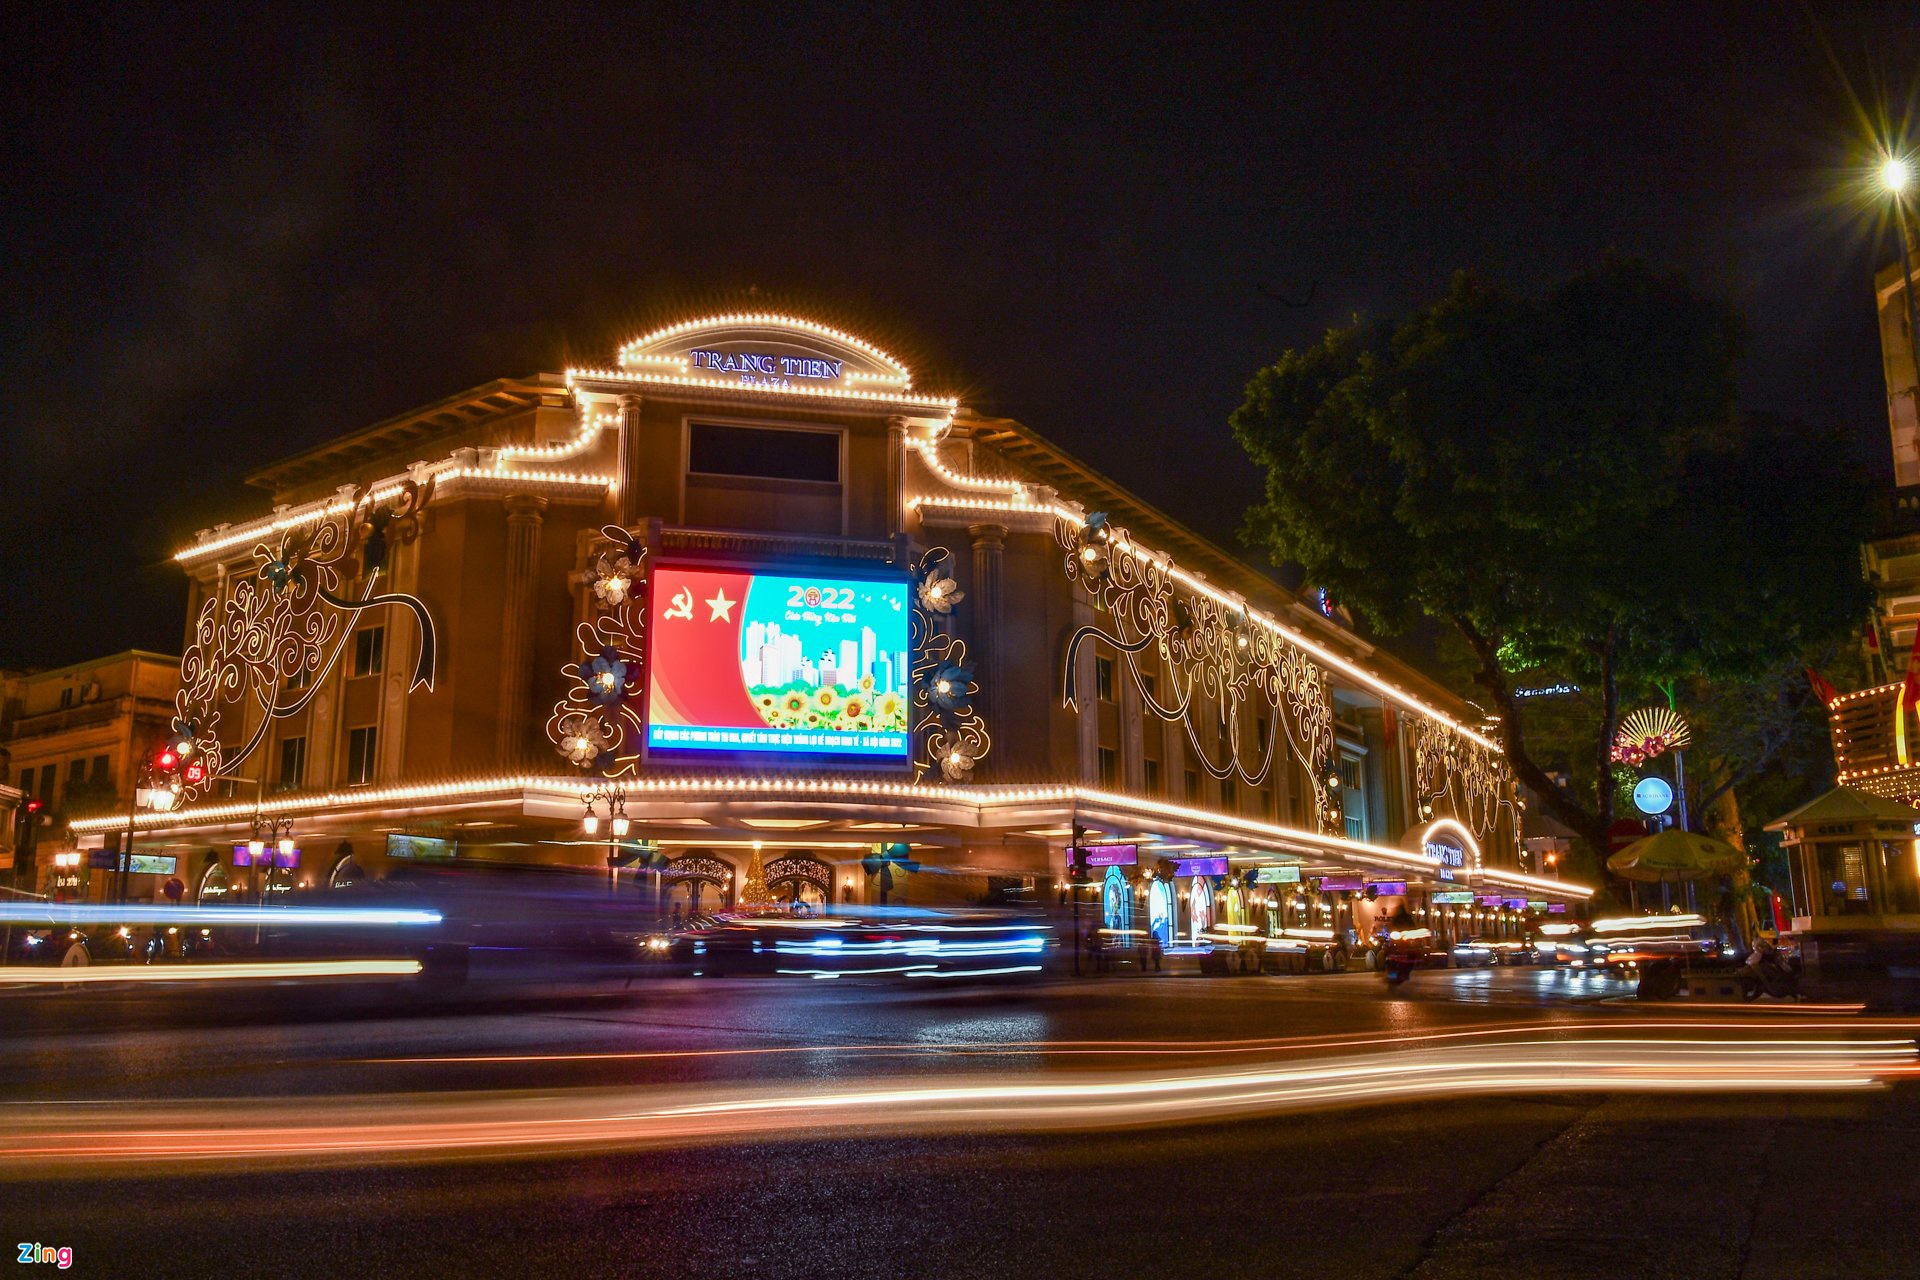 Trung tâm thương mại Tràng Tiền được trang hoàng bằng đèn nhiều màu sắc là điểm nhấn nổi bật trong đêm cuối năm.

Trung tâm thương mại Tràng Tiền được trang hoàng bằng đèn nhiều màu sắc là điểm nhấn nổi bật trong đêm cuối năm.